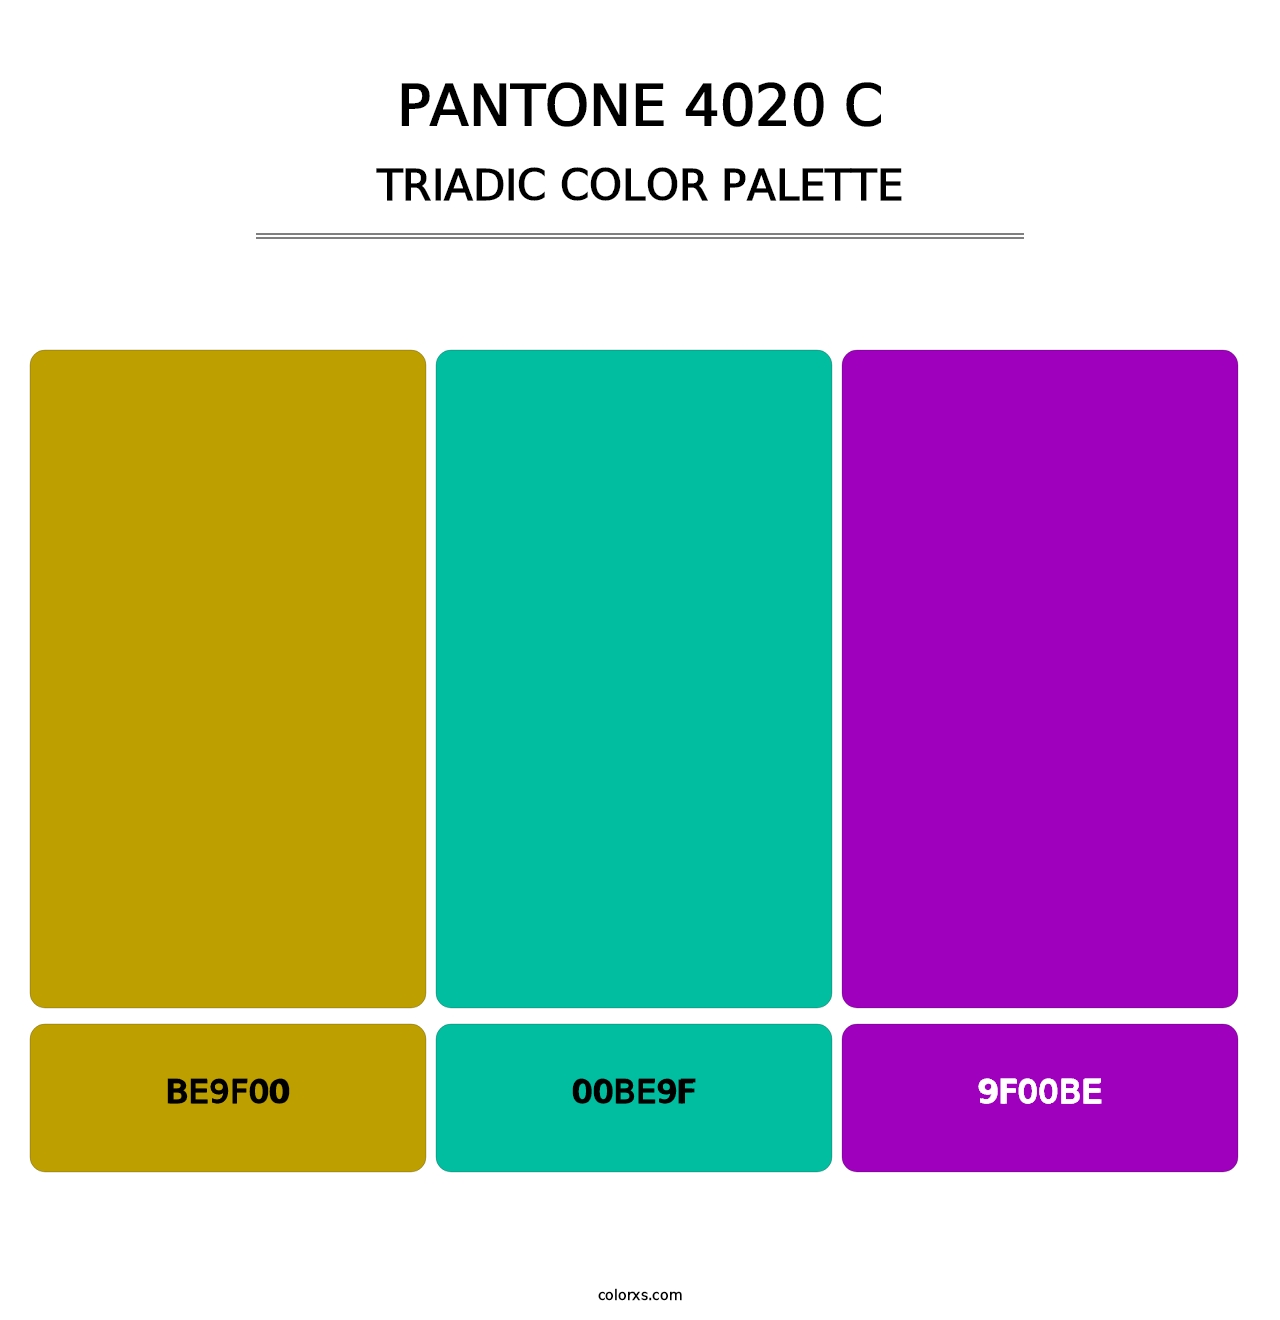 PANTONE 4020 C - Triadic Color Palette